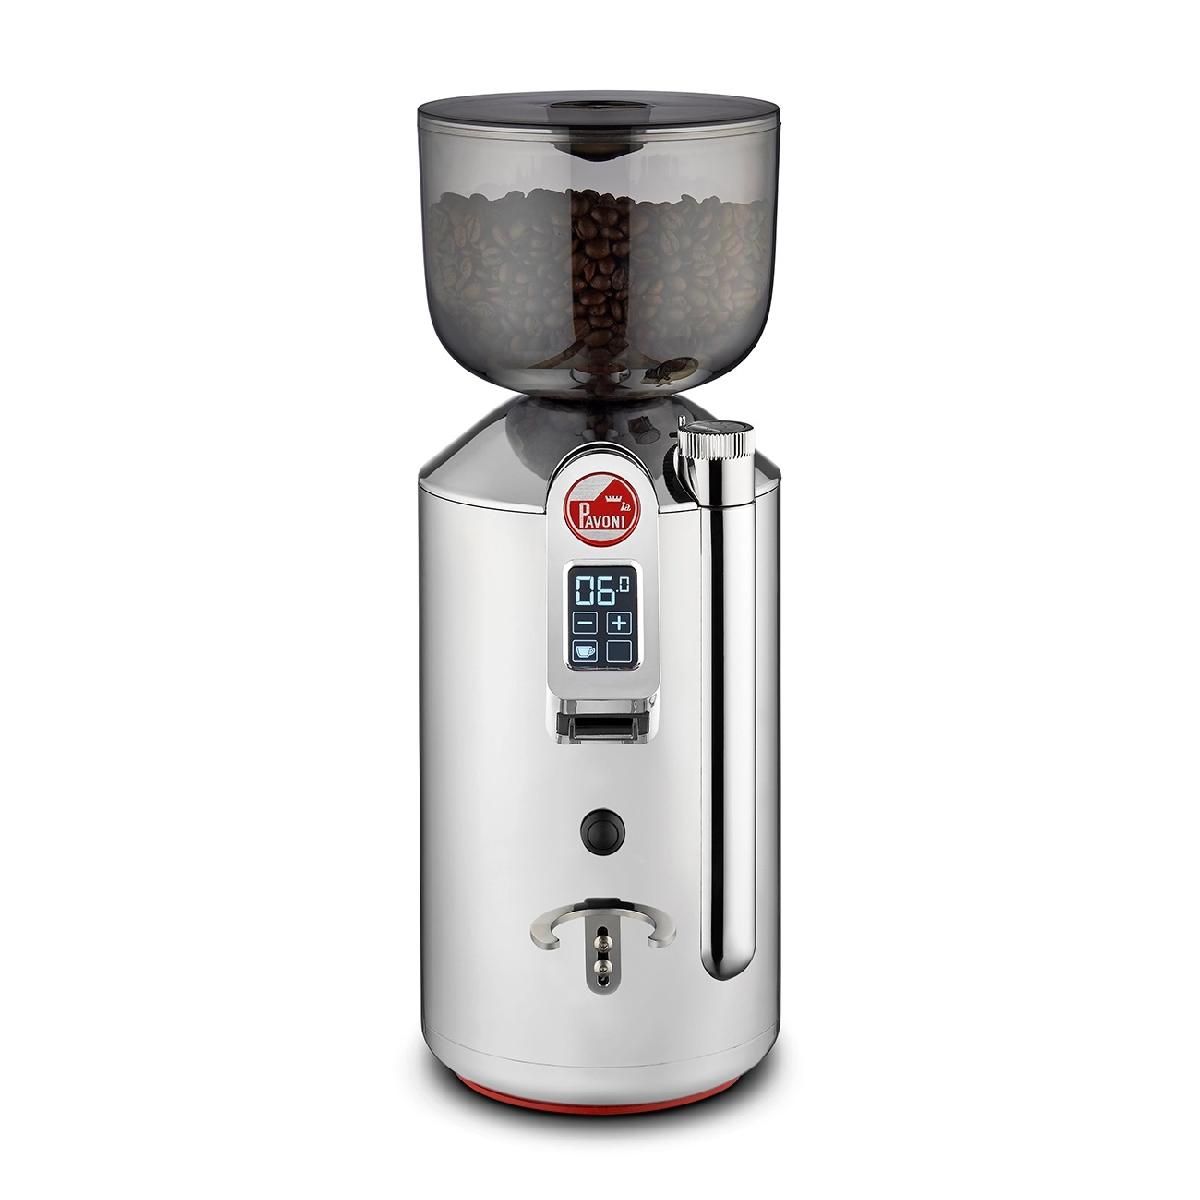 Кофемолка La Pavoni LPGGRI01EU серебристый переключатель shimano 105 r7000 ss задний 11 скоростей серебристый irdr7000sss